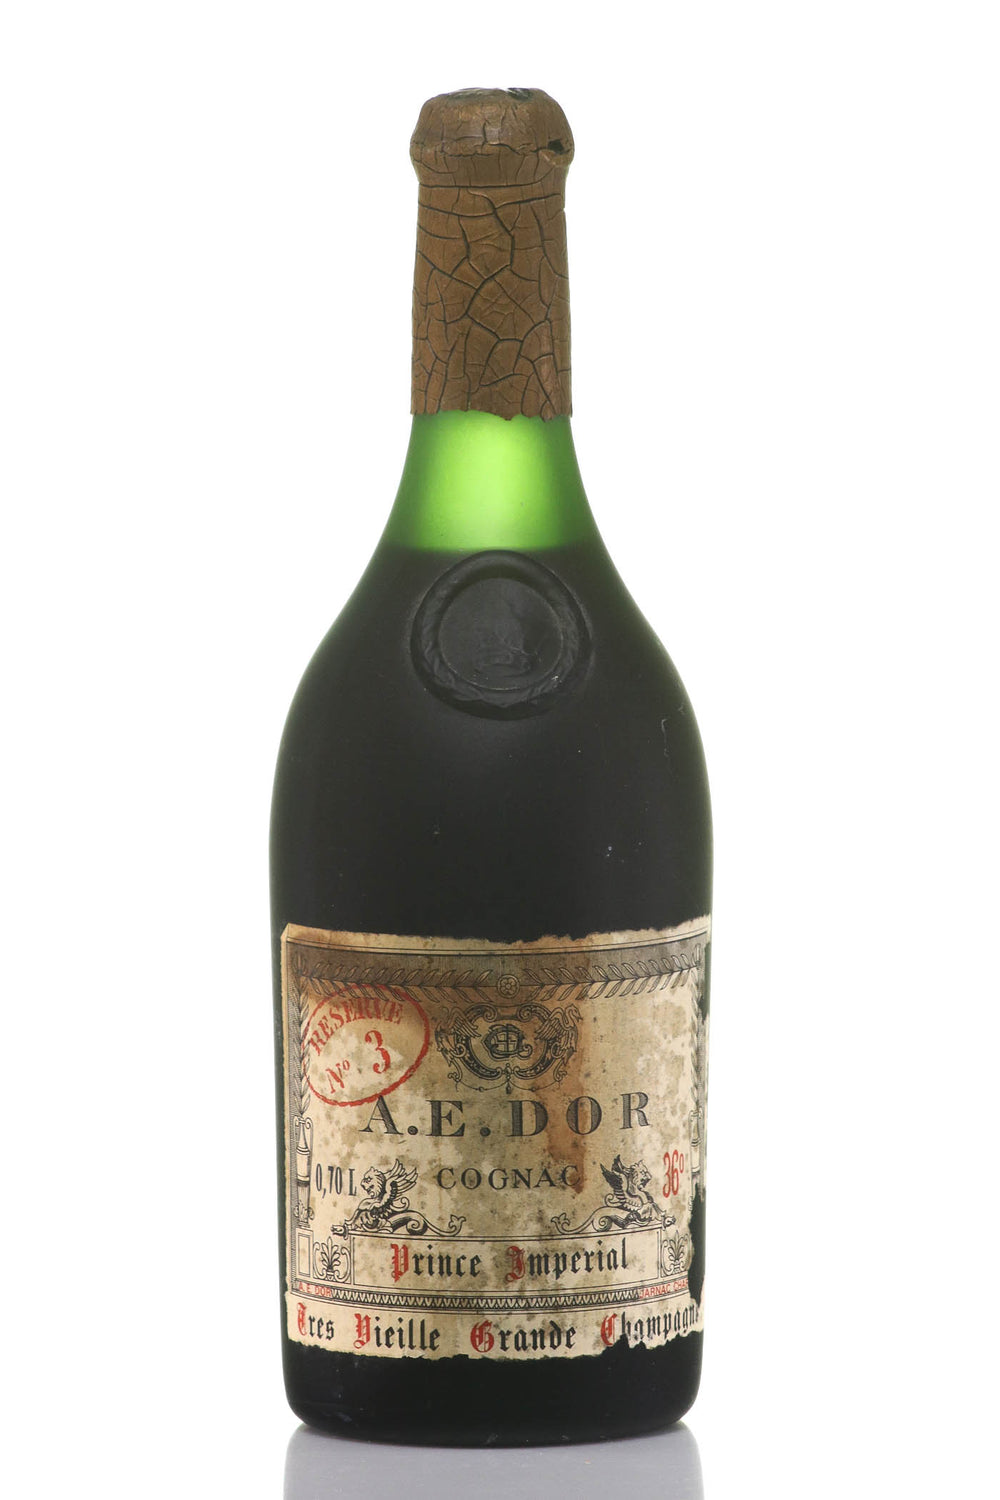 1875 A.E. DOR No.3 Prince Imperial Cognac, France - Tres Vieille Grande Champagne - Rue Pinard